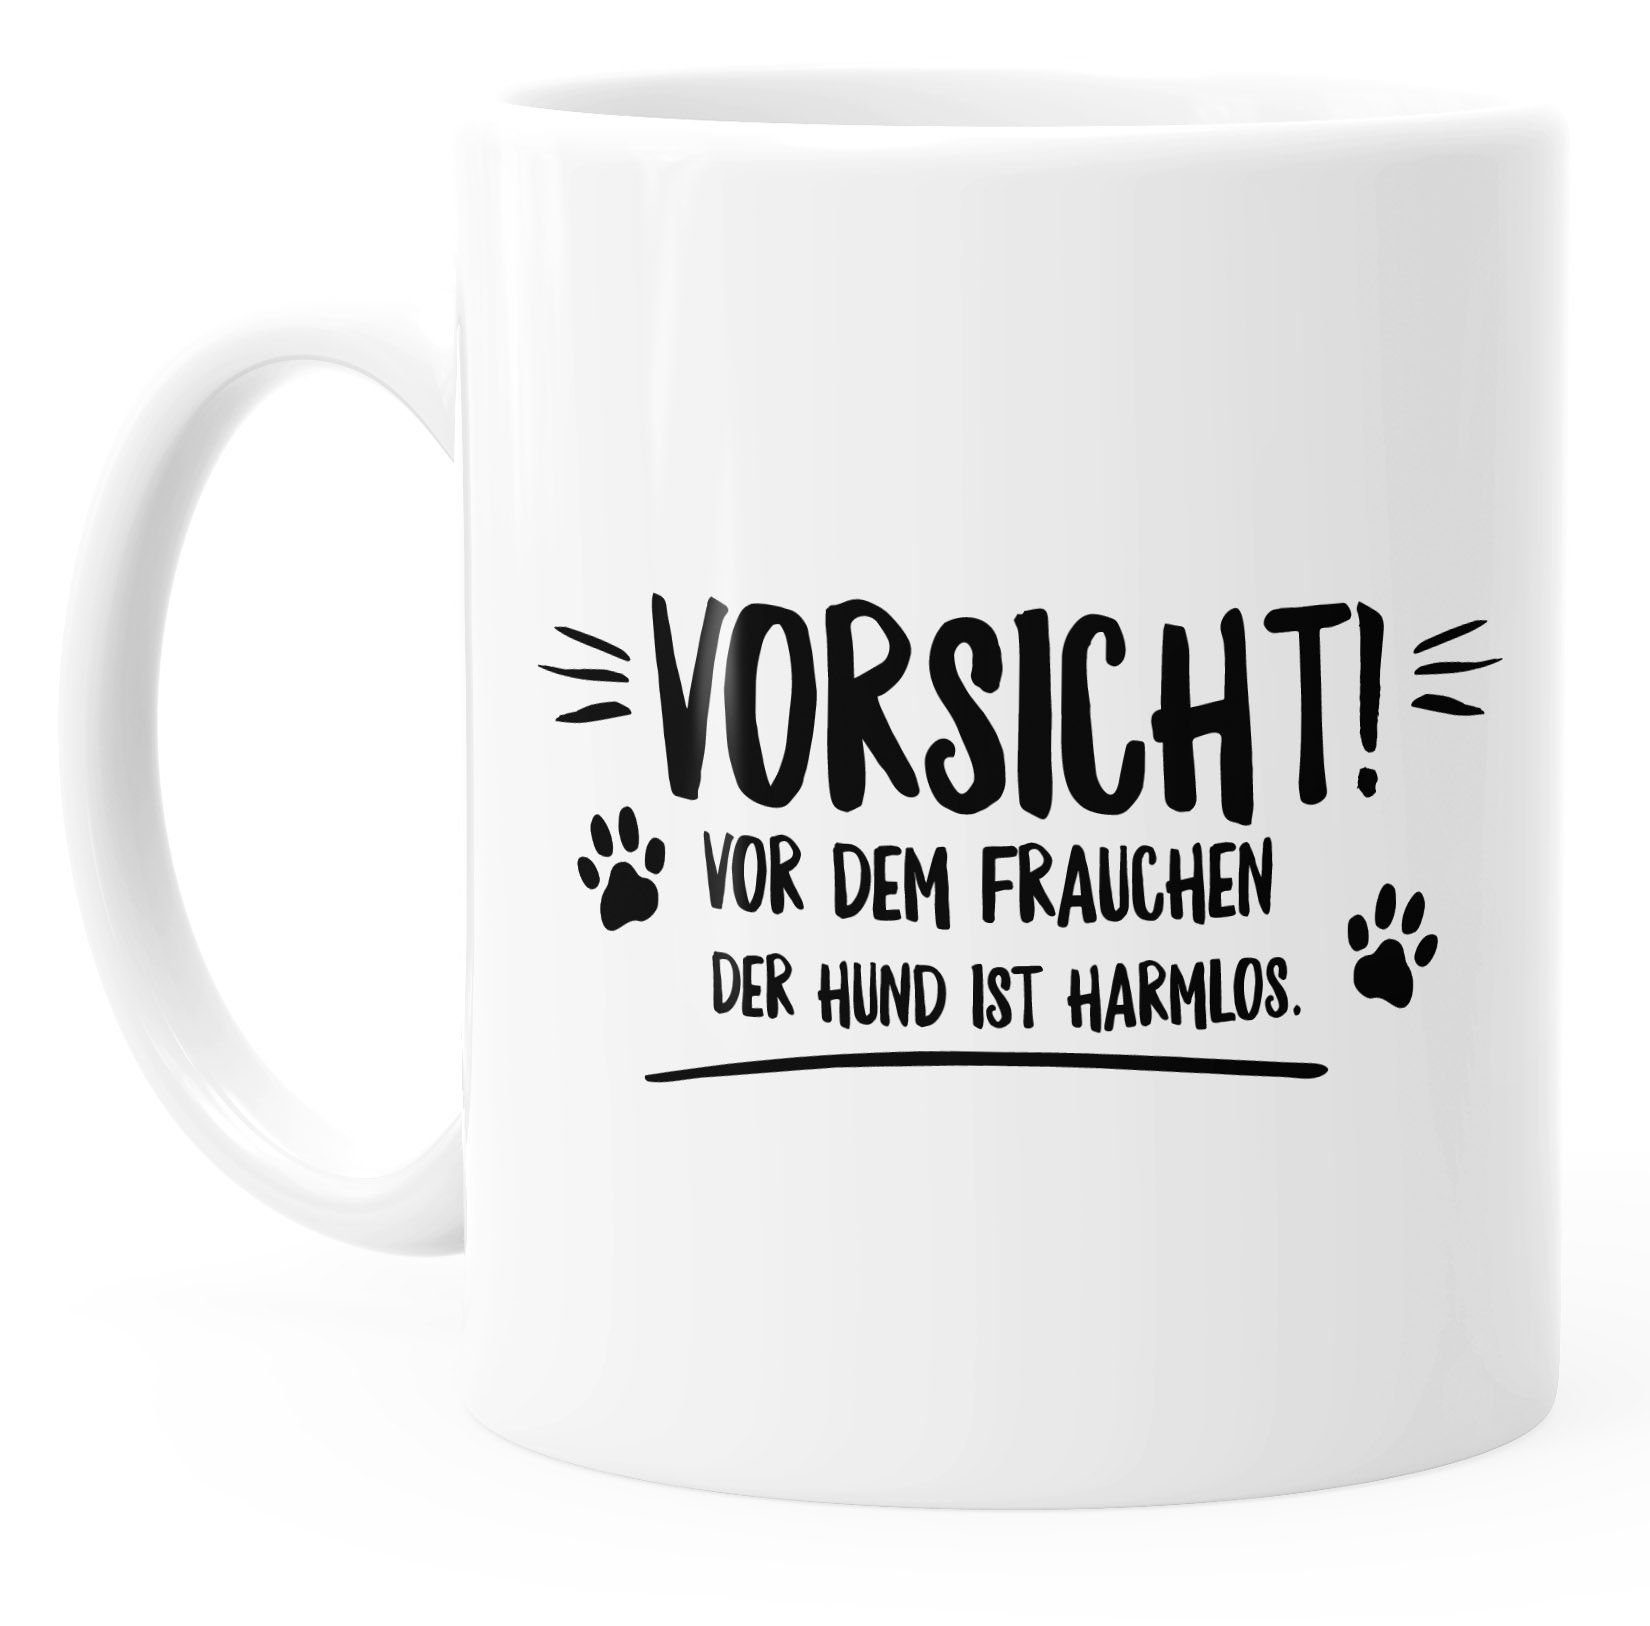 Spruch mit harmlos! glänzend MoonWorks der Tasse dem Vorsicht Keramik MoonWorks®, vor Frauchen Hund ist Kaffee-Tasse